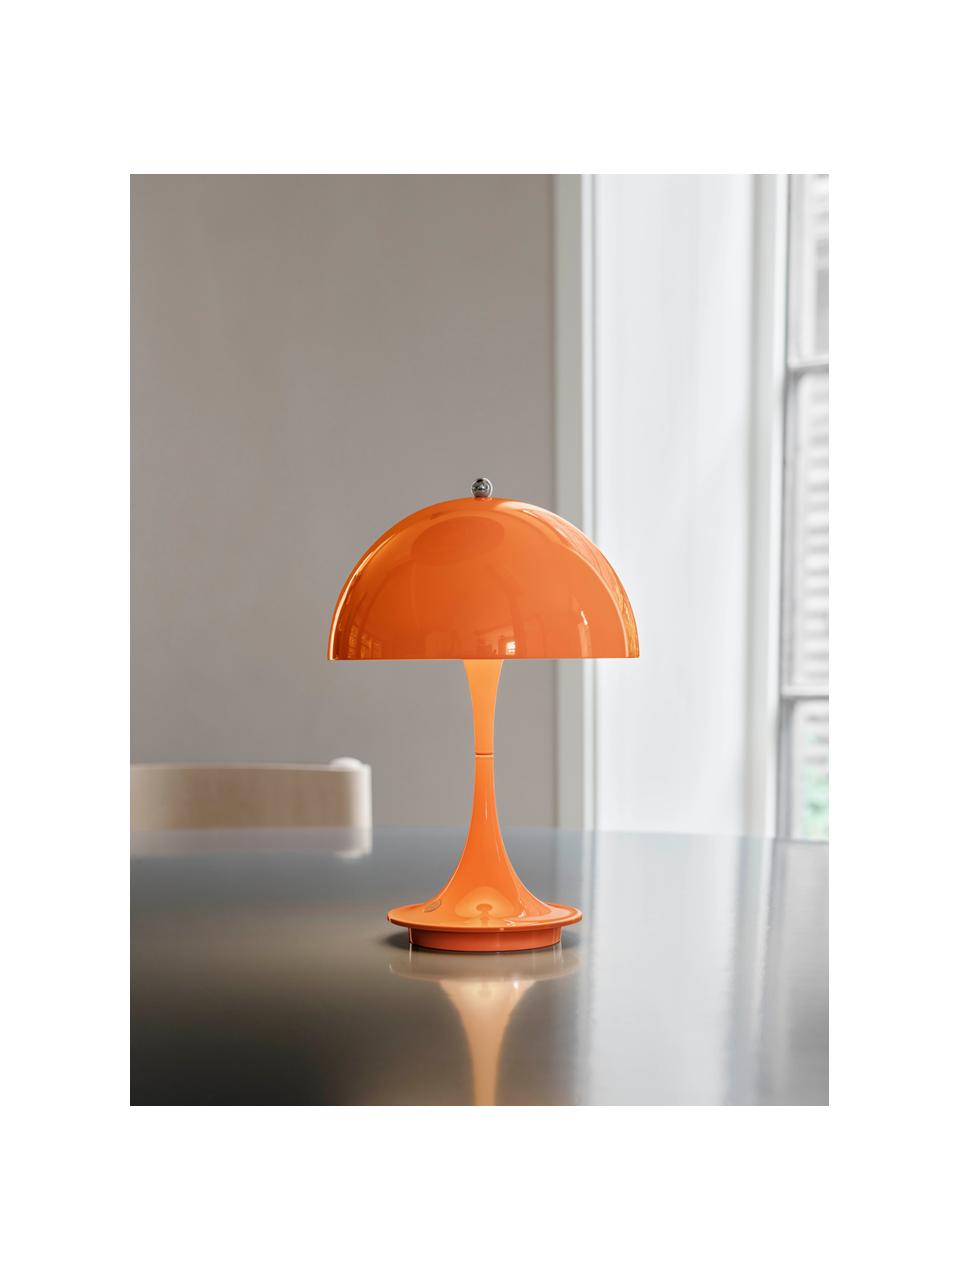 Mobilna lampa stołowa LED z funkcją przyciemniania Panthella, W 24 cm, Stelaż: aluminium powlekane, Pomarańczowa stal, Ø 16 x 24 cm